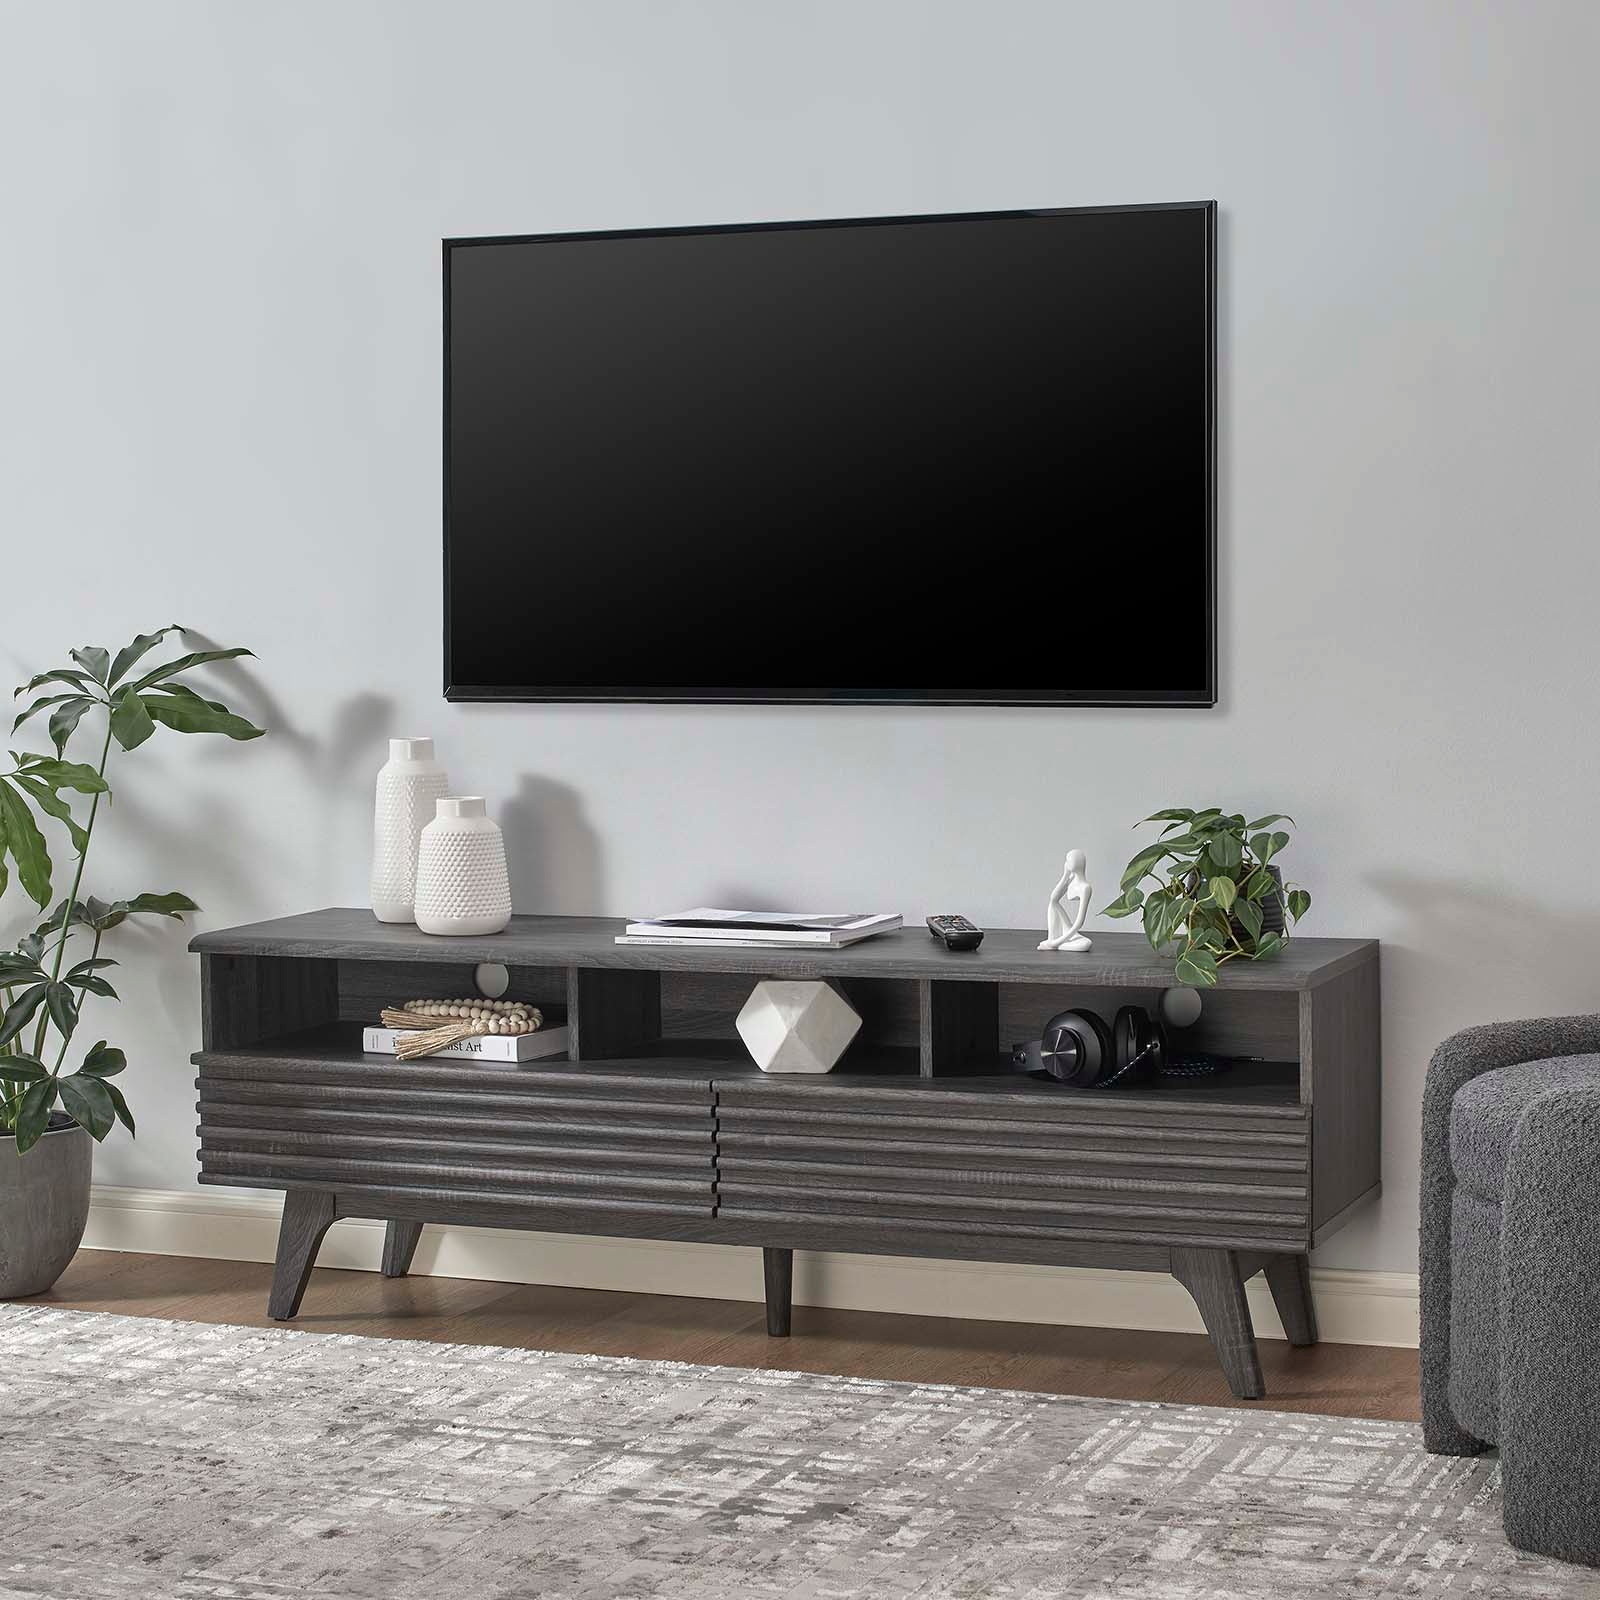 Mueble de 60” para TV Niklas color negro en una sala.